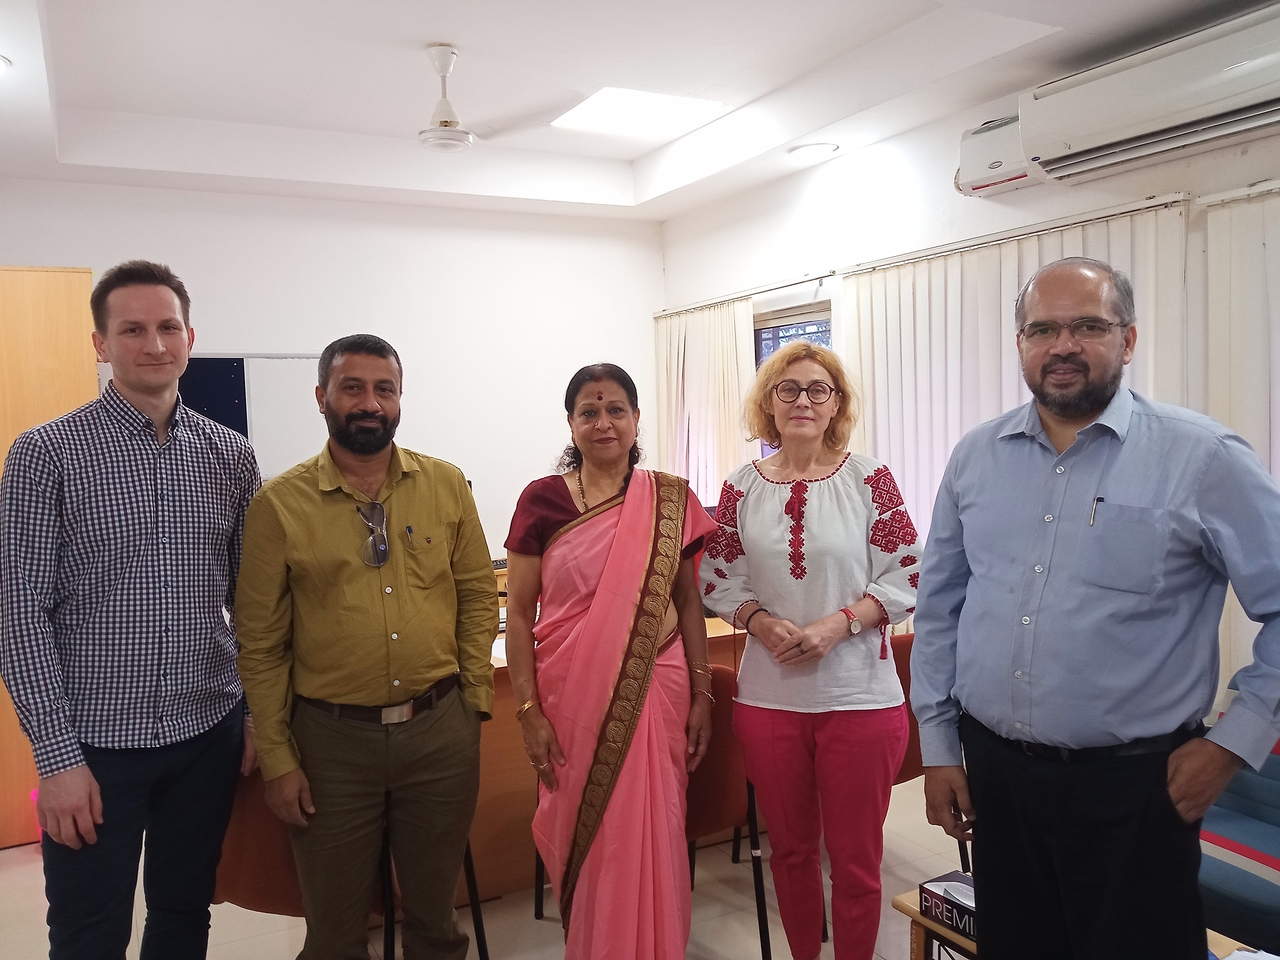 Trzech mężczyzn i dwie kobiety stoi w pomieszczeniu biurowym, jedna z kobiet jest ubrana w różowe indyjskie sari.